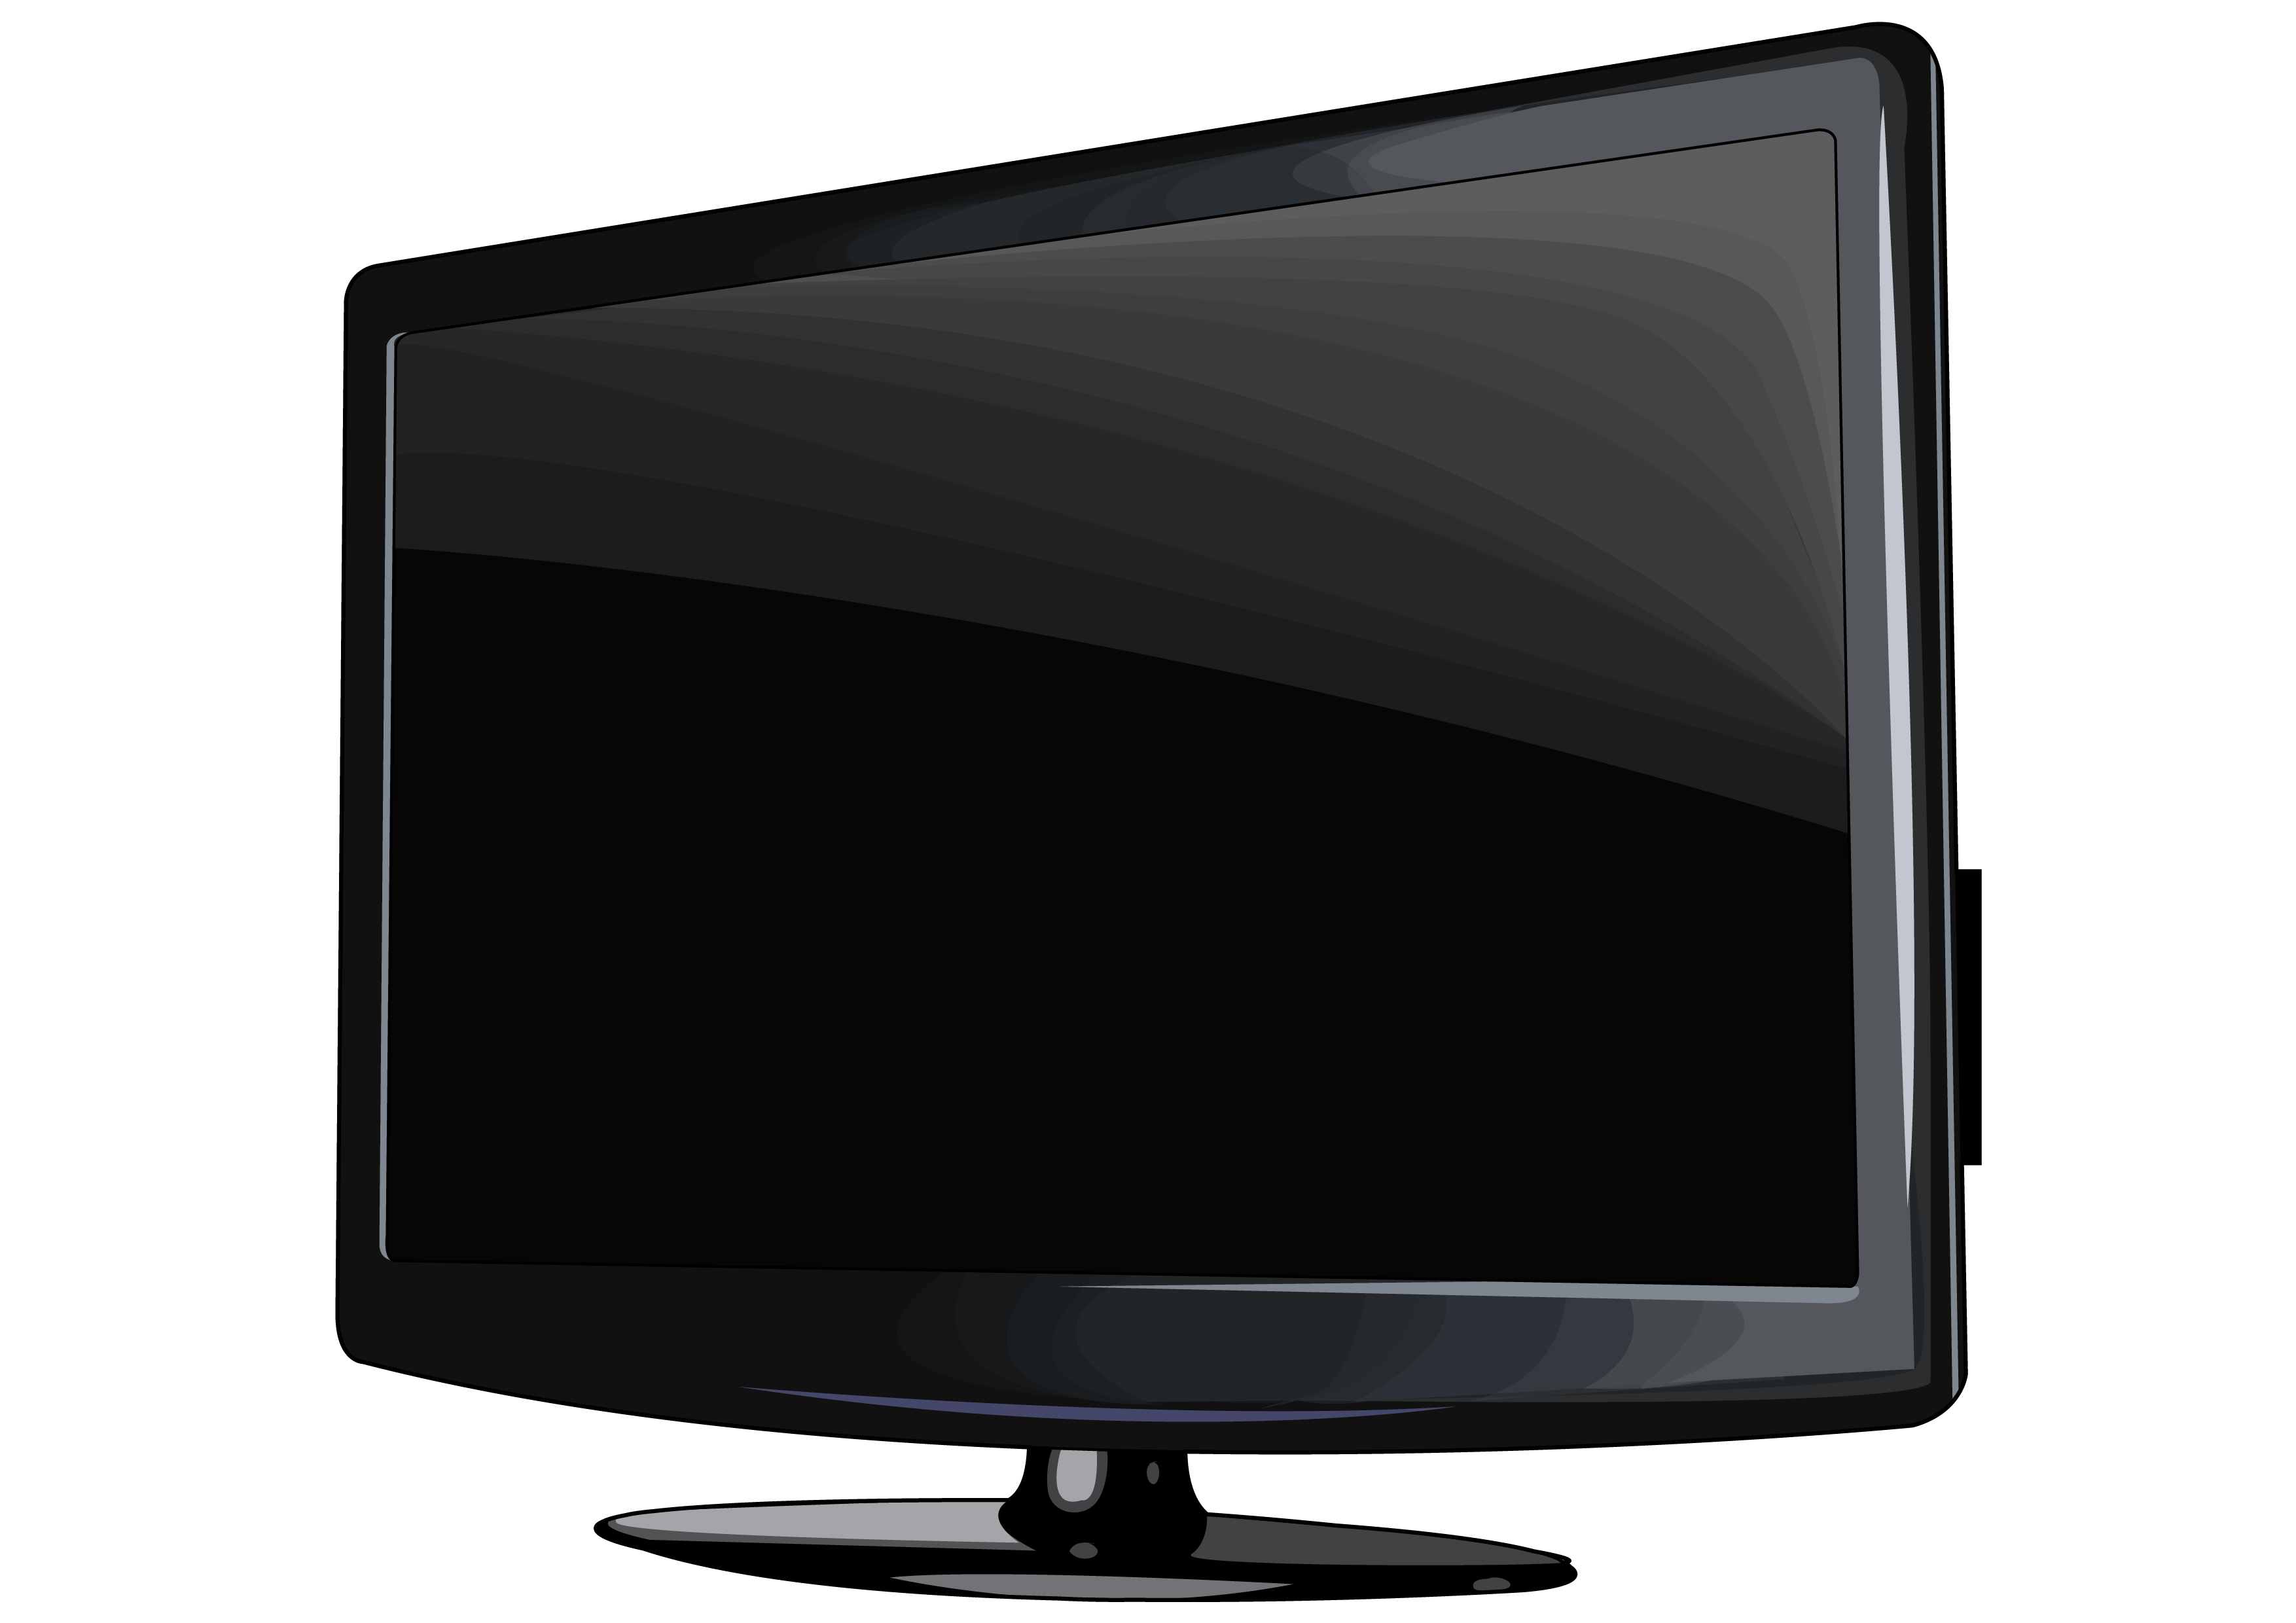 New tv set. Телевизор сбоку вектор. Плоский телевизор сбоку вектор. Телевизор на прозрачном фоне. Телевизор на белом фоне.